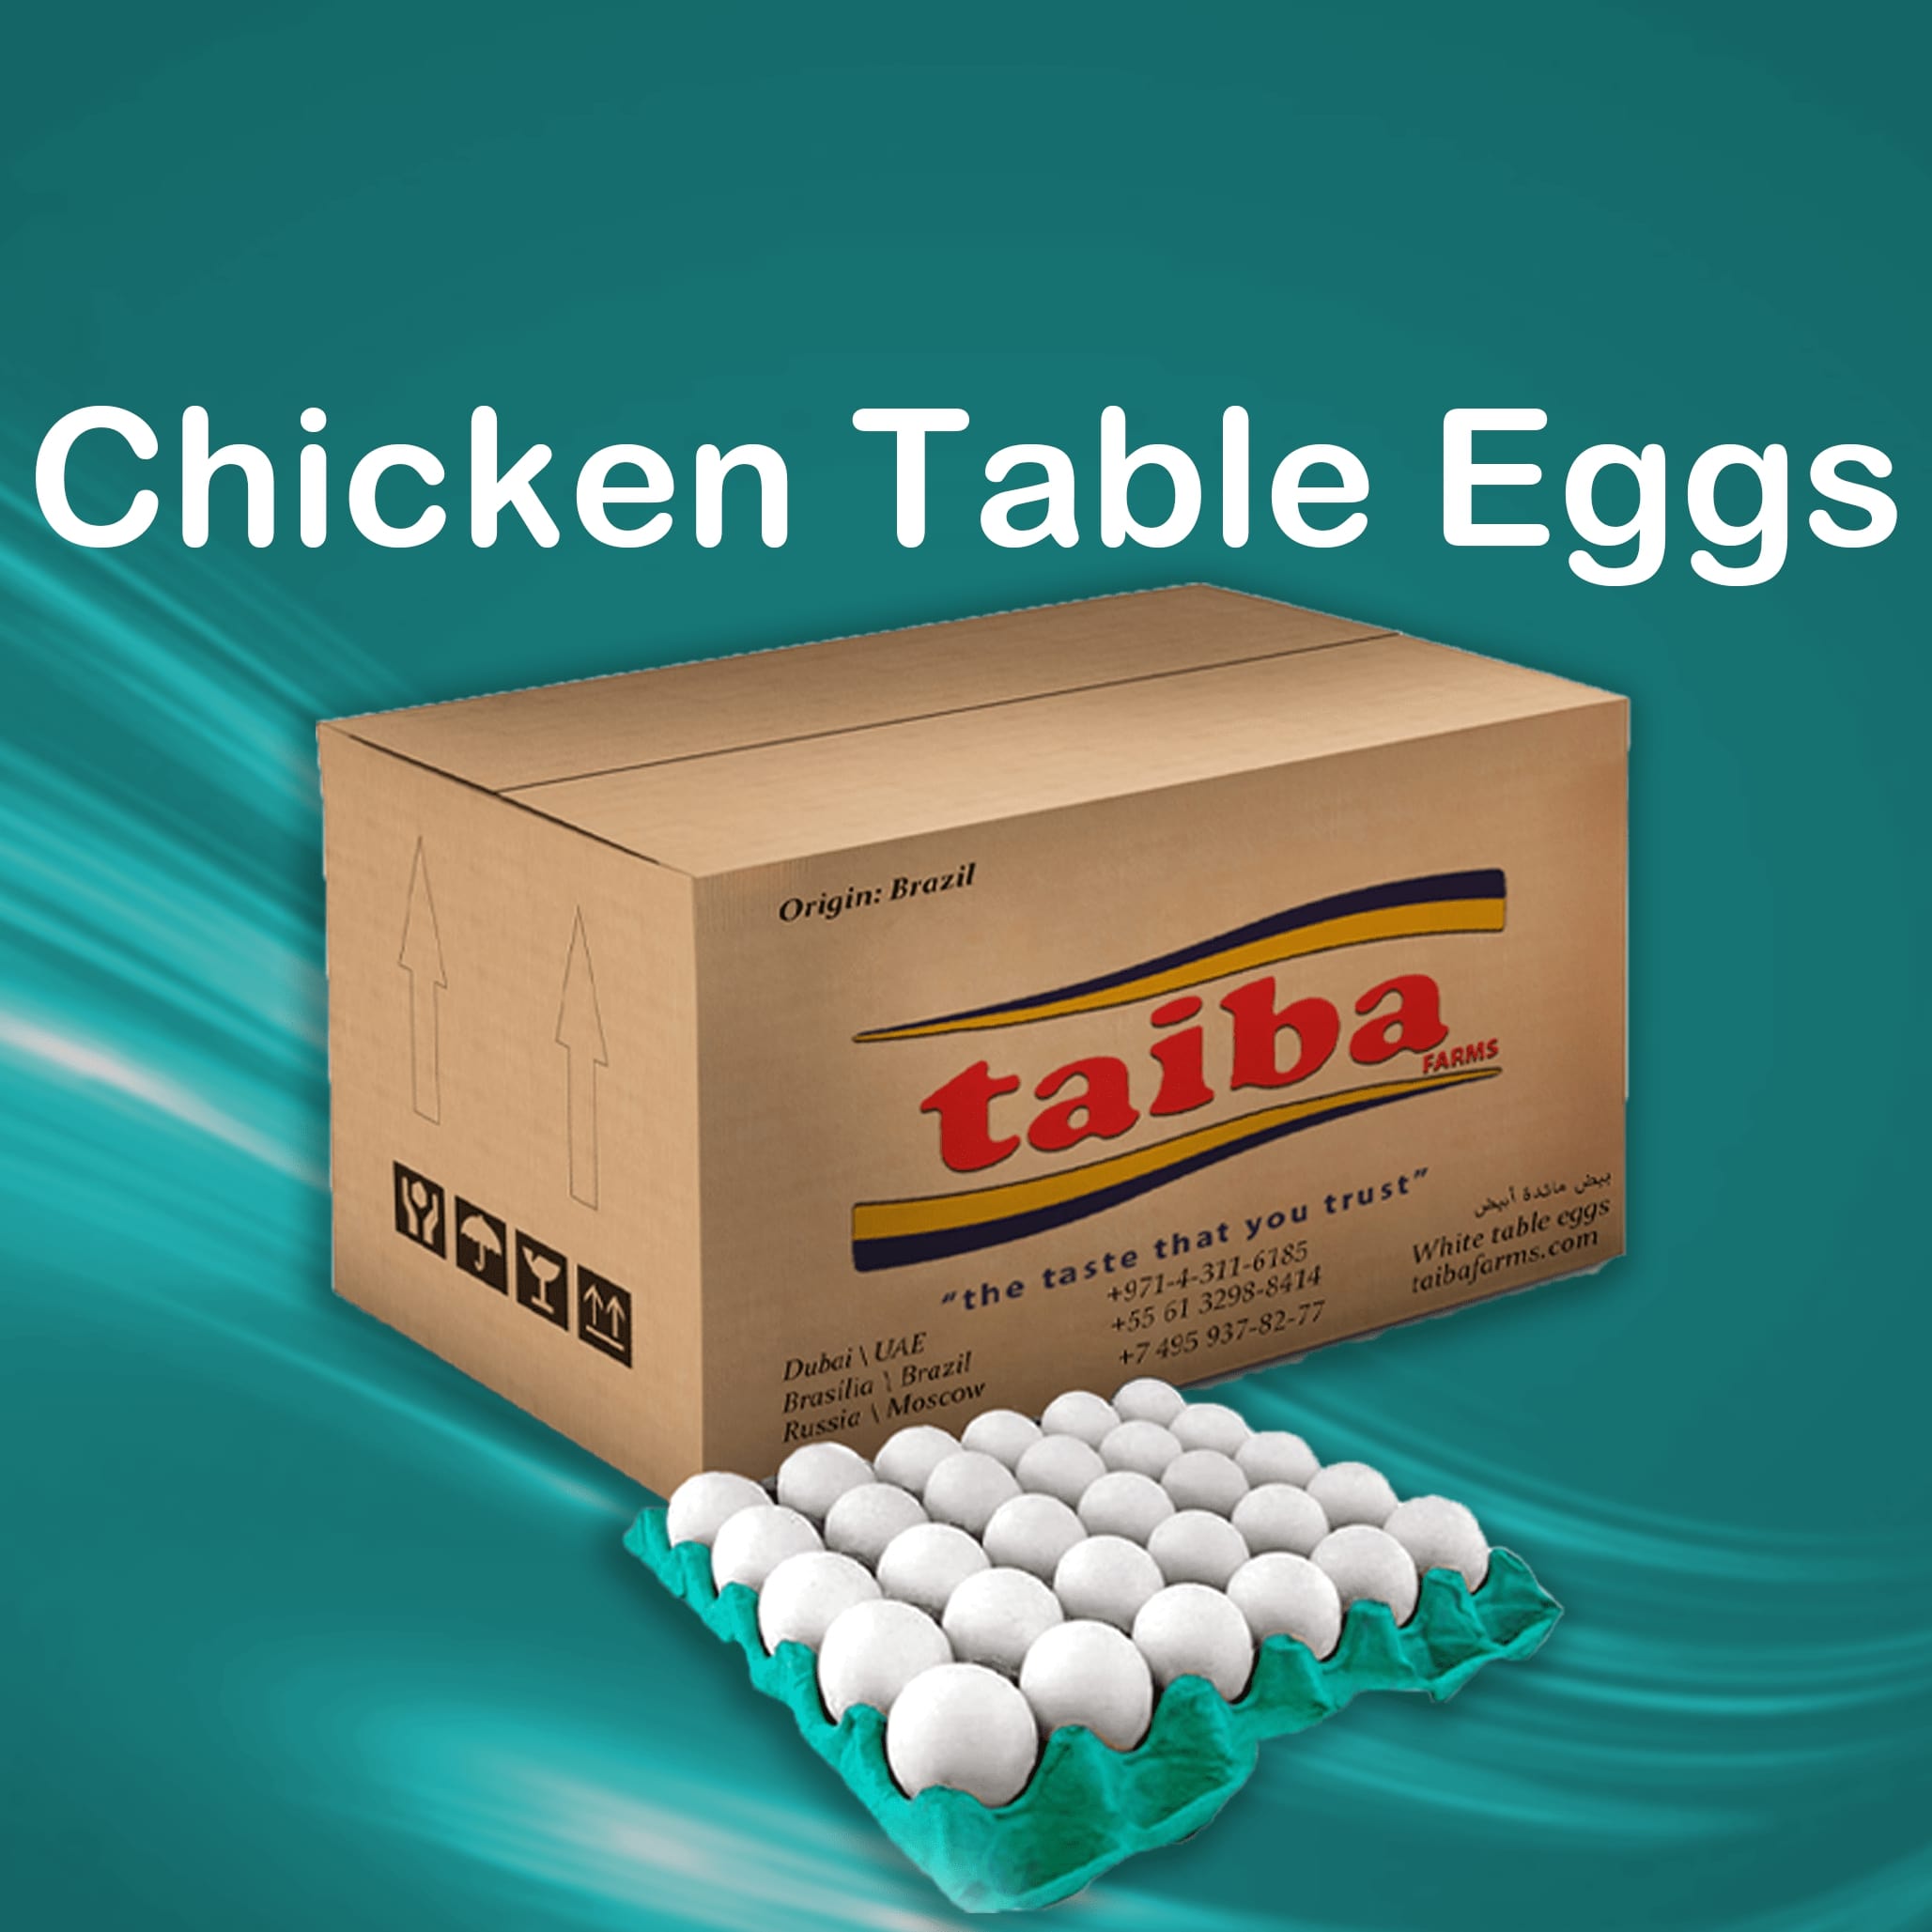 frsh-eggs-suppliers-wholesalers-destributors-buy-eggs-online-in-uae-dubai-sharjah-abudahbi-alain